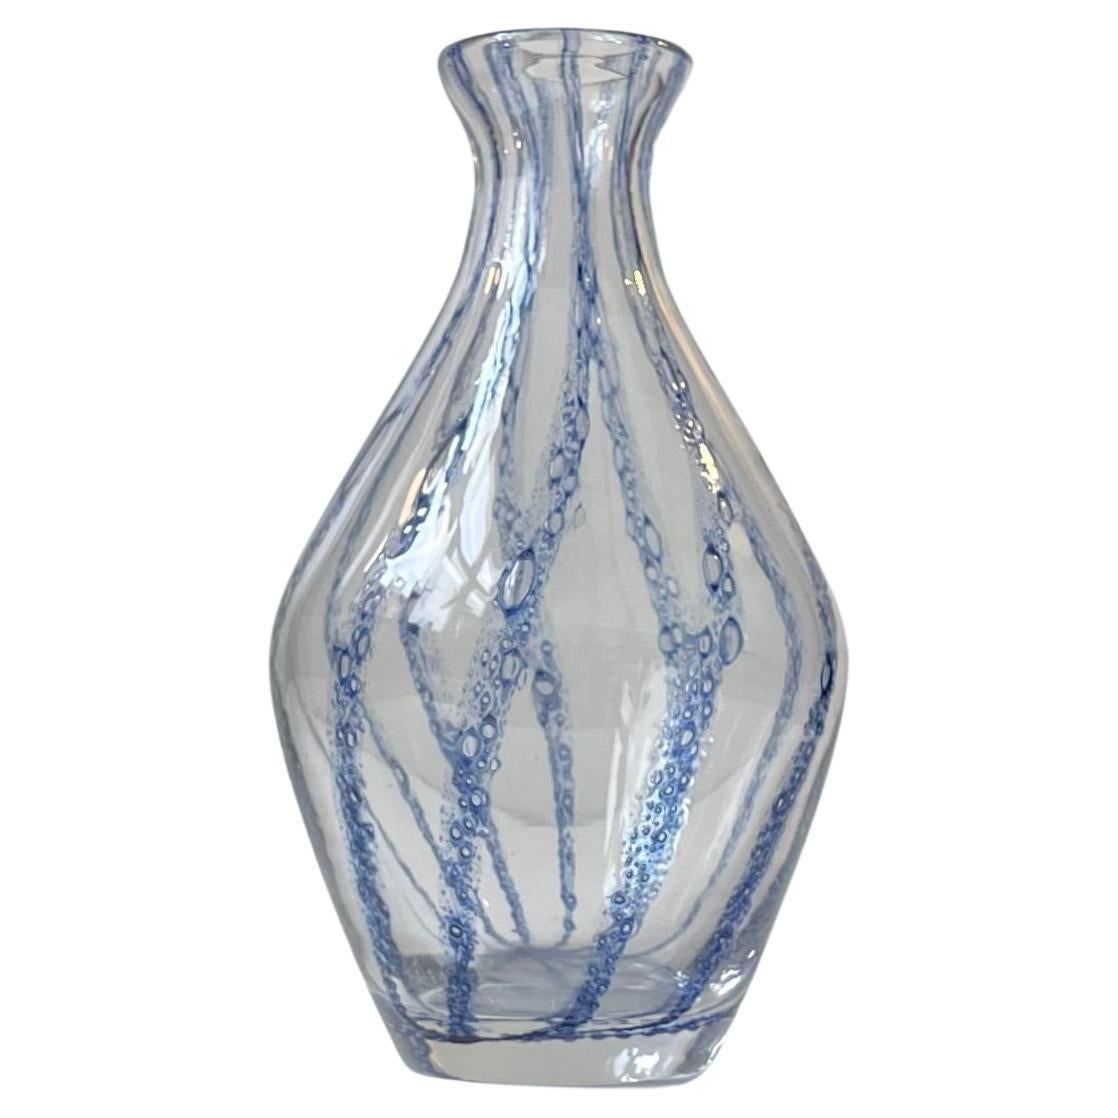 Vase aus Muranoglas mit blauen Streifen, Barovier & Toso zugeschrieben